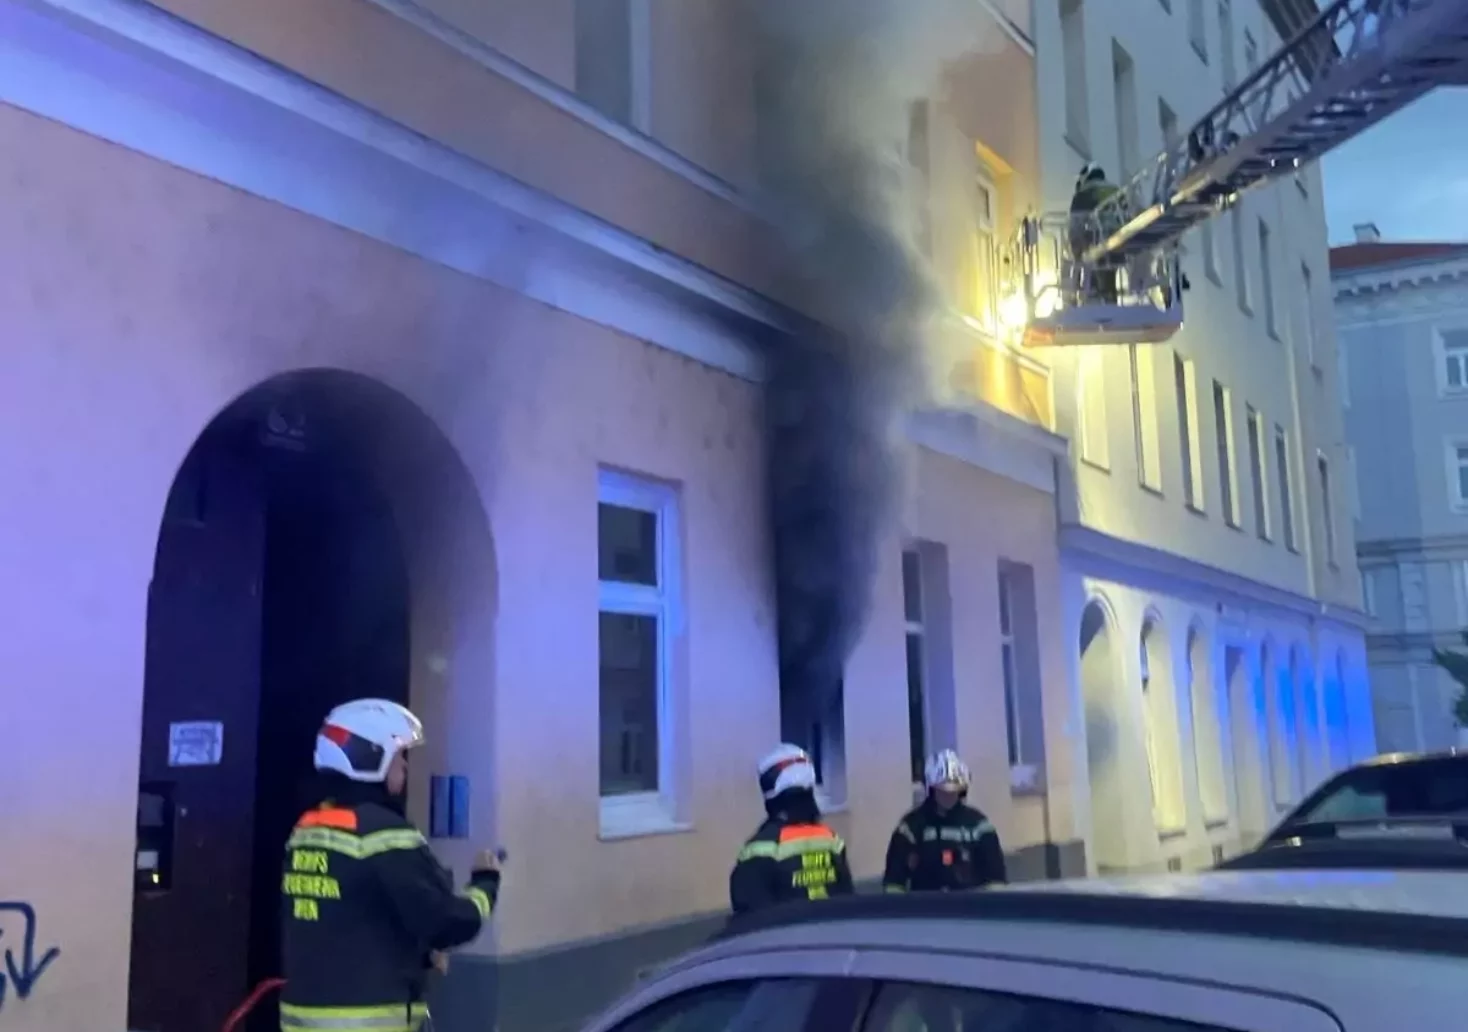 Wohnung in Flammen: Dramatischer Einsatz der Feuerwehr rettet 37 Leben